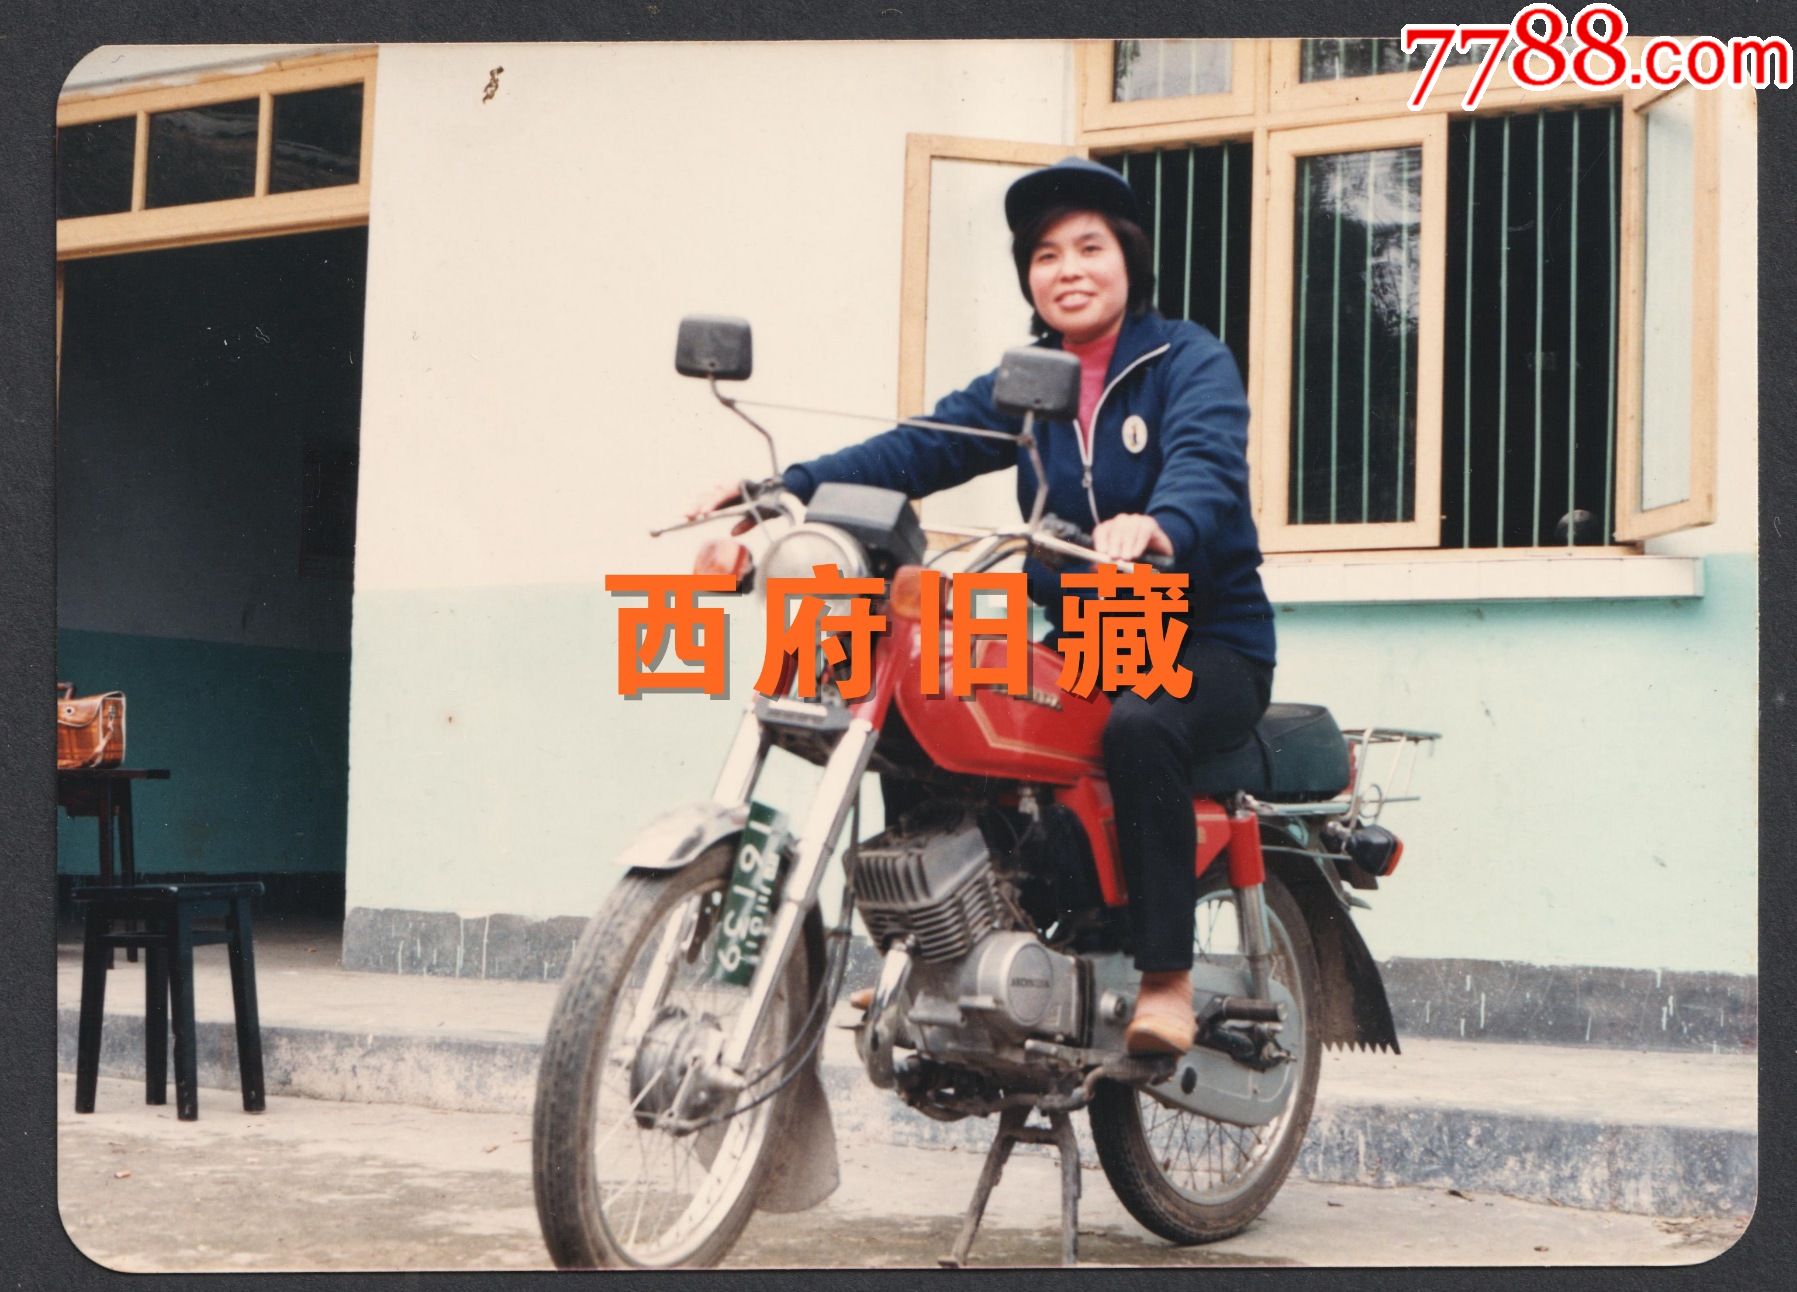 八十年代四川牌照的摩托车老照片